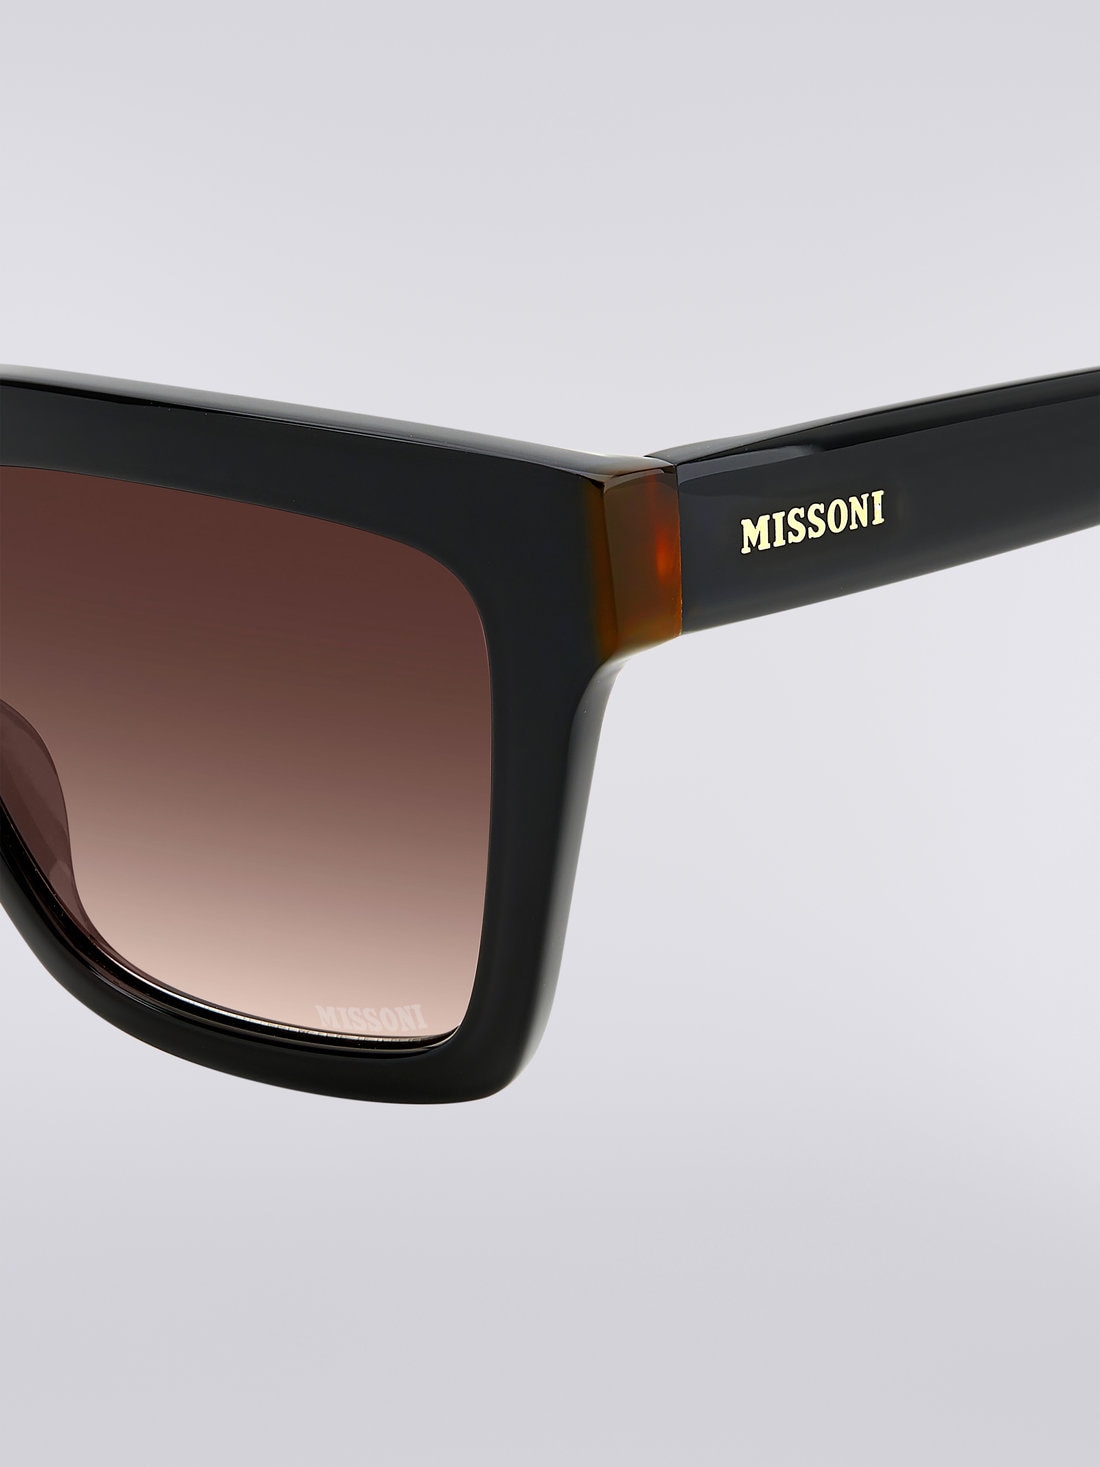 Gafas de sol Missoni Seasonal de acetato, Negro    - 8051575840180 - 3